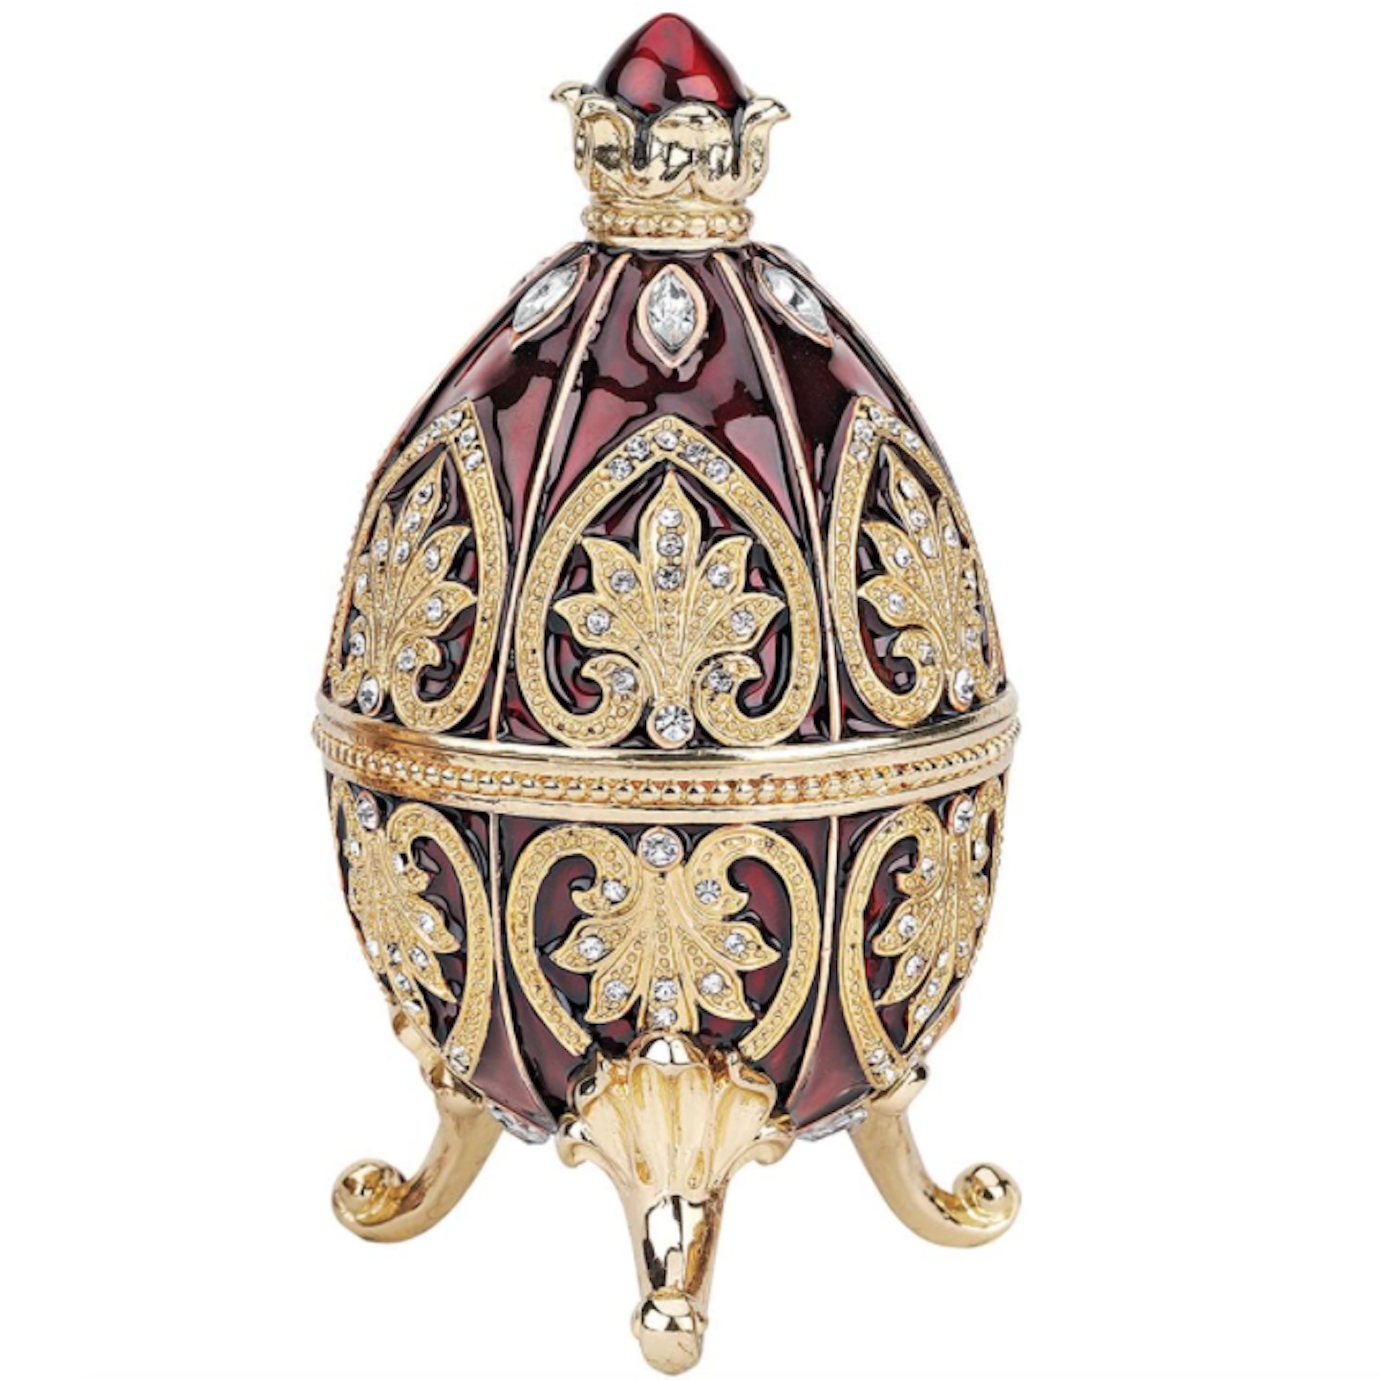 擁有了這枚來自皇室設計的復活節彩蛋，誰還不是個公主呢！